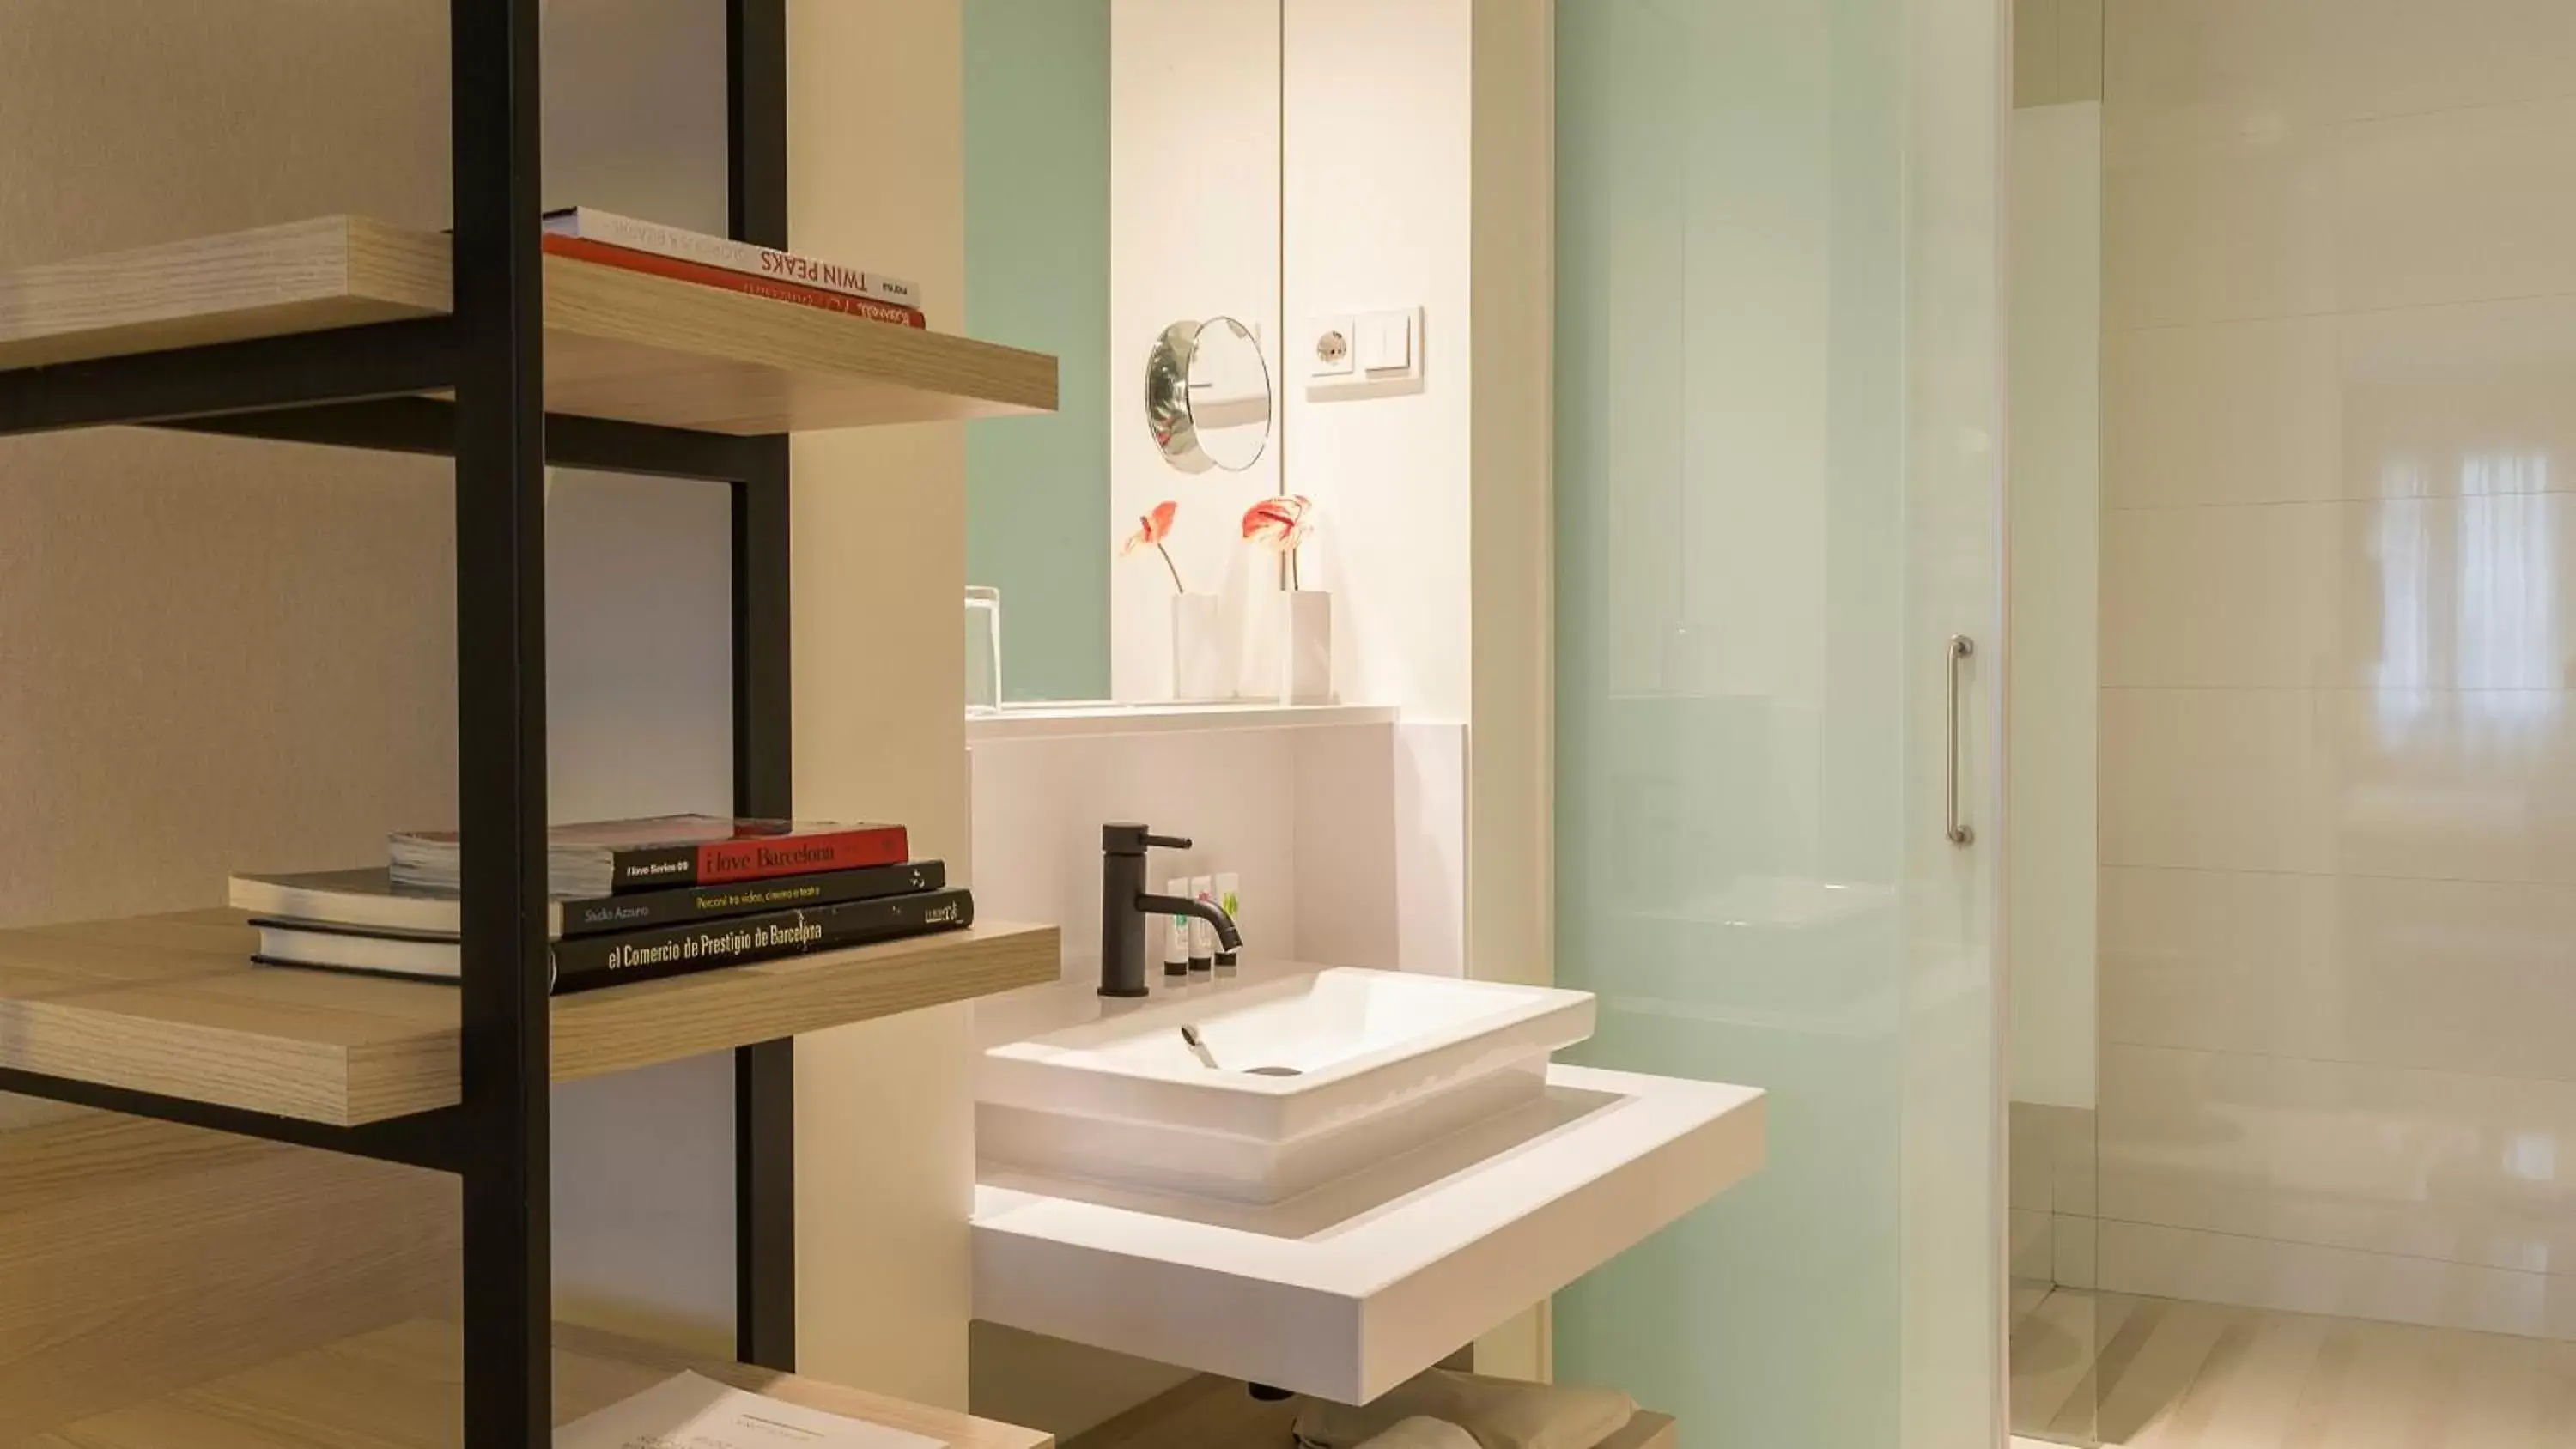 Bathroom in Hotel Denit Barcelona